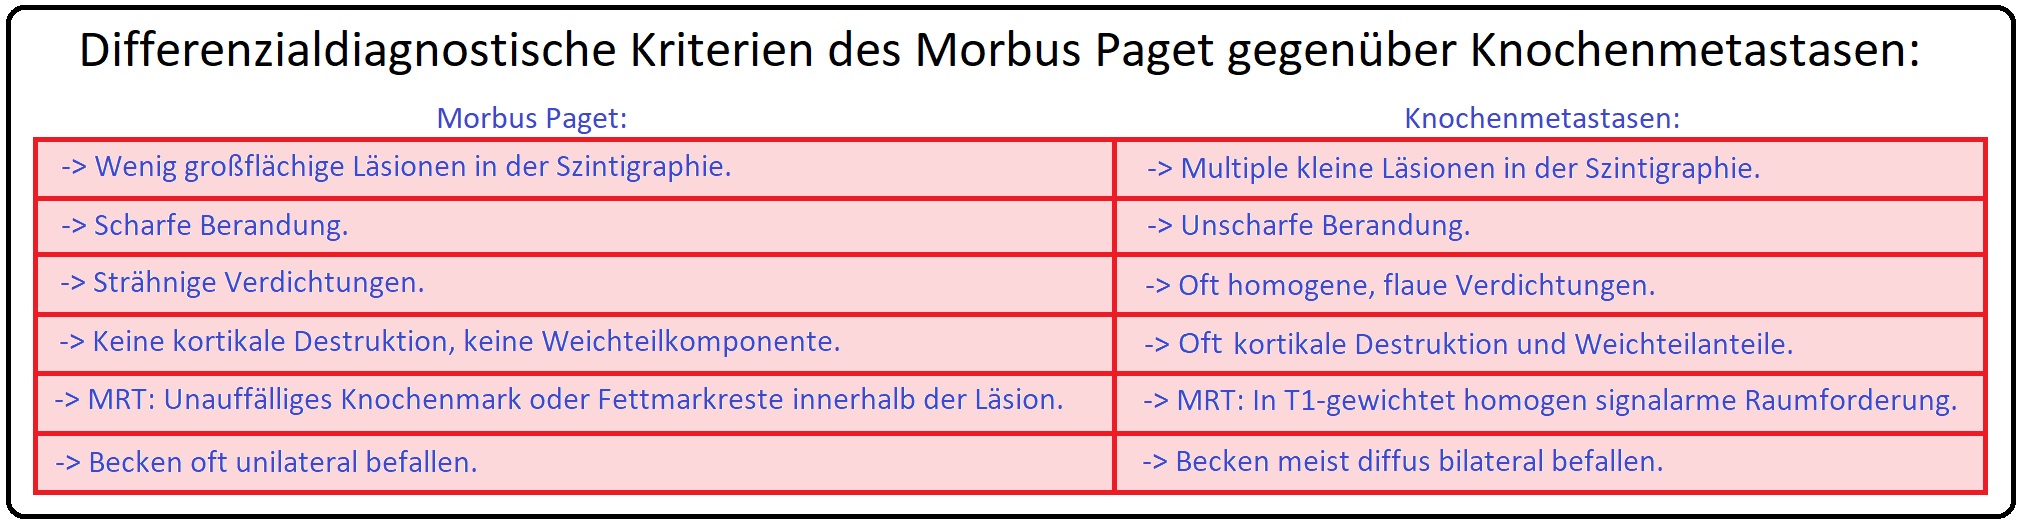 717 Differenzialdiagnostische Kriterien des Morbus Paget gegenüber Knochenmetastasen